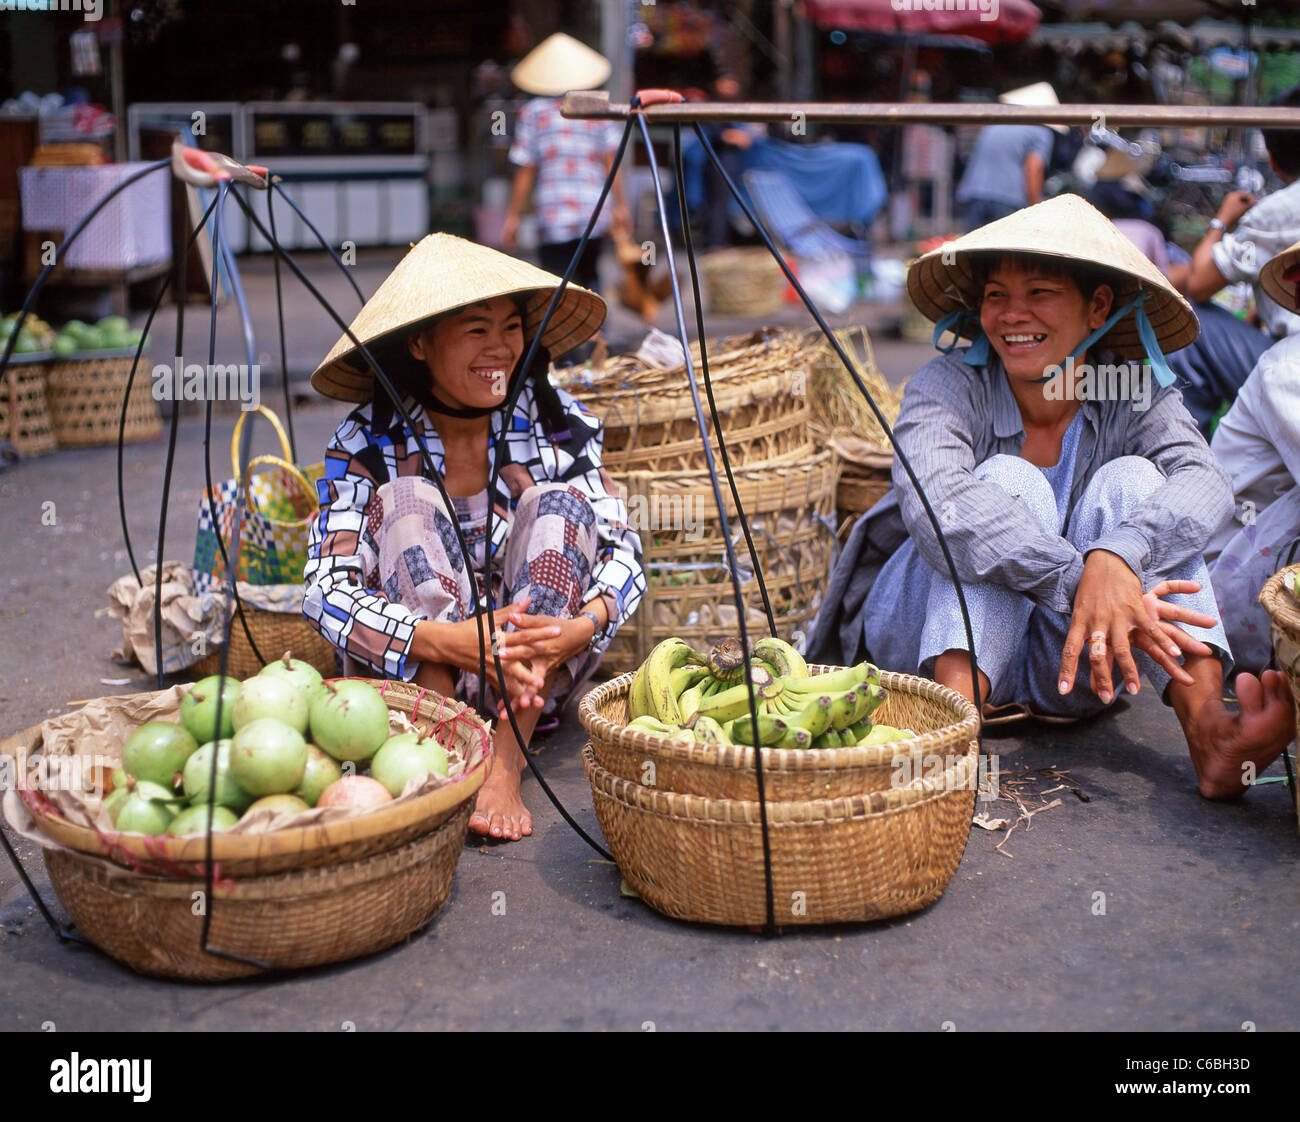 Women fruit sellers, Bình Tây Market, Cholon, District 6, Ho Chi Minh City (Saigon), Socialist Republic of Vietnam Stock Photo